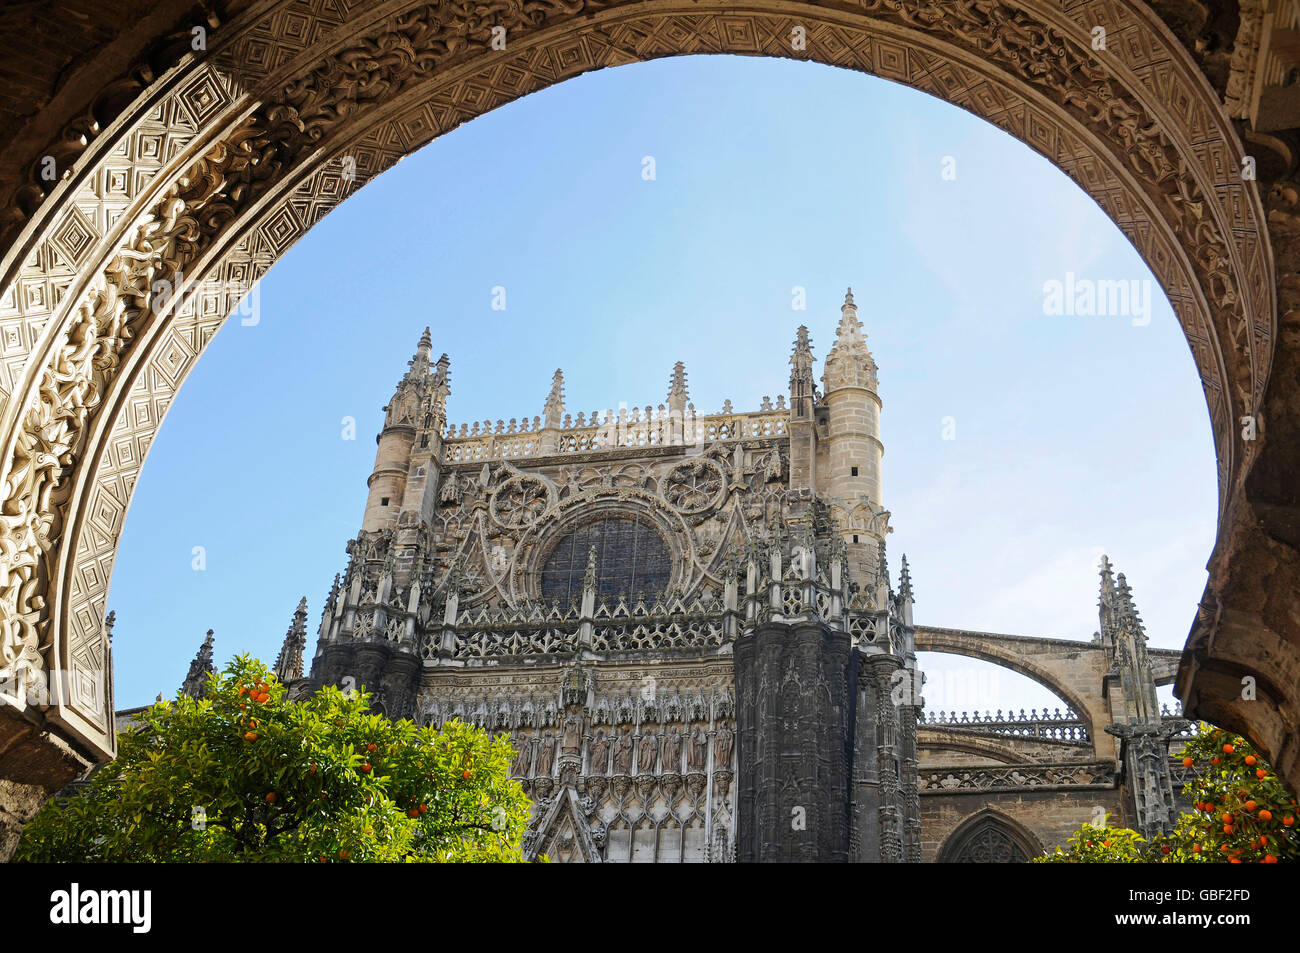 Orangerie, Santa Maria de la Sede, cathédrale, Séville, Séville, Andalousie, province de l'Espagne, Europe Banque D'Images